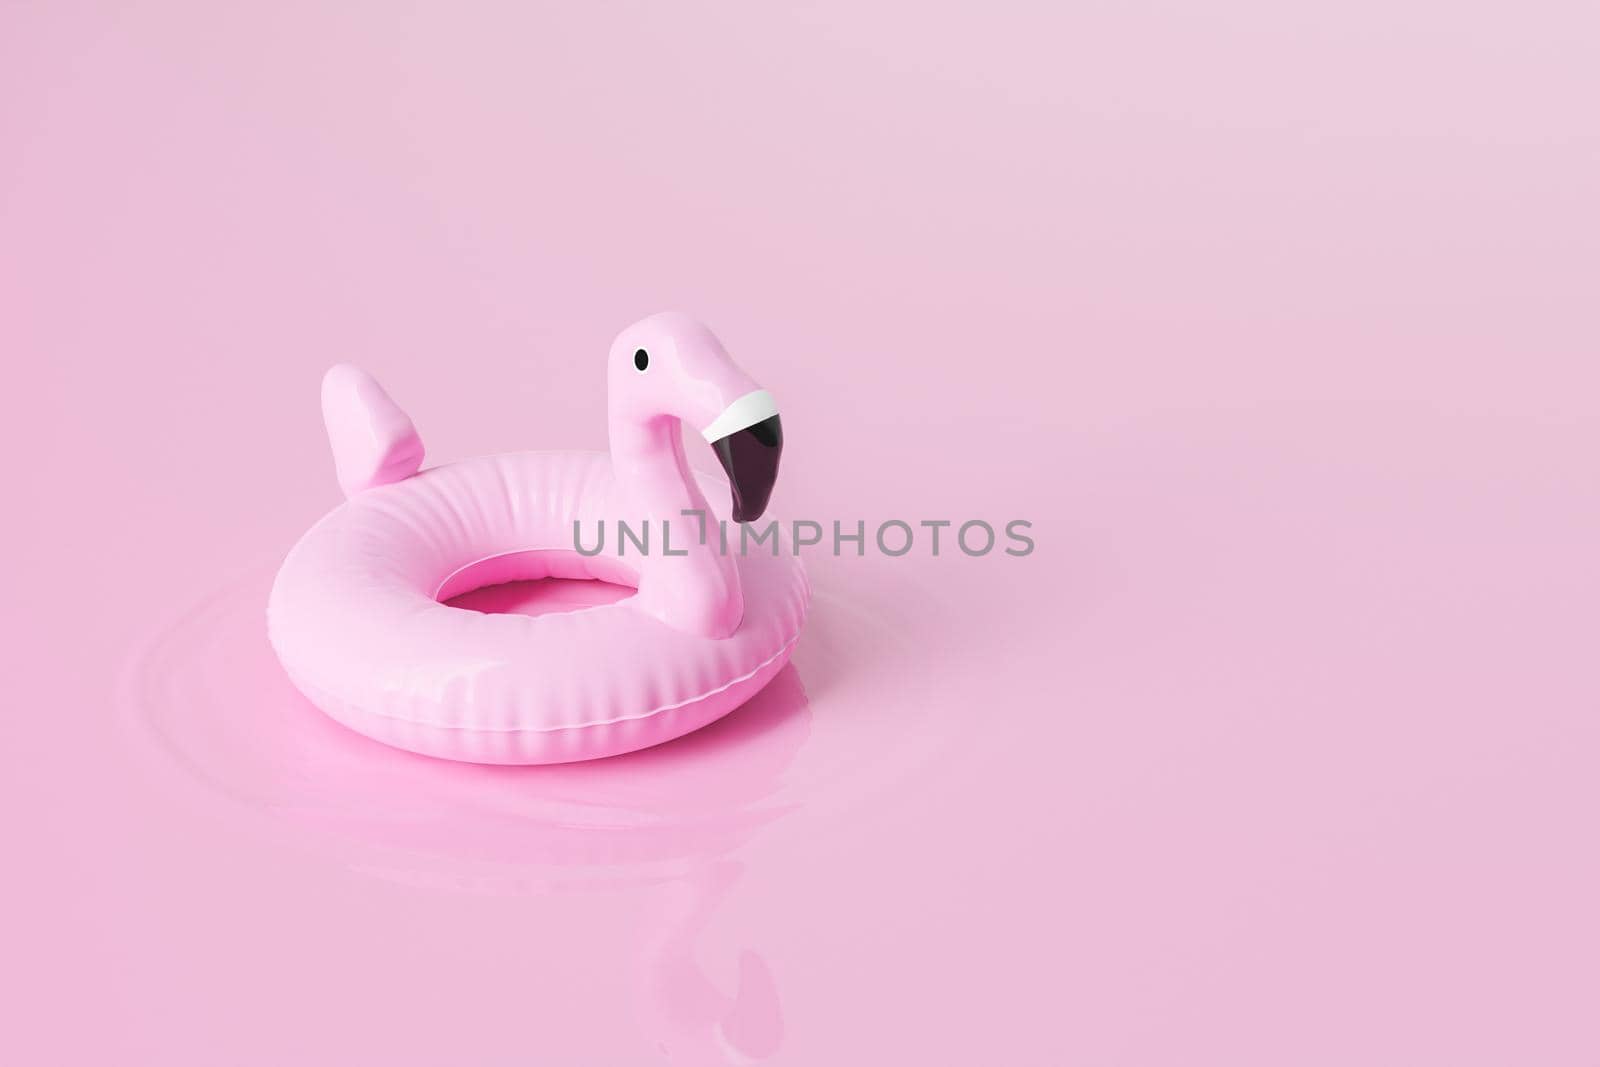 Flamingo tube on pink background by asolano